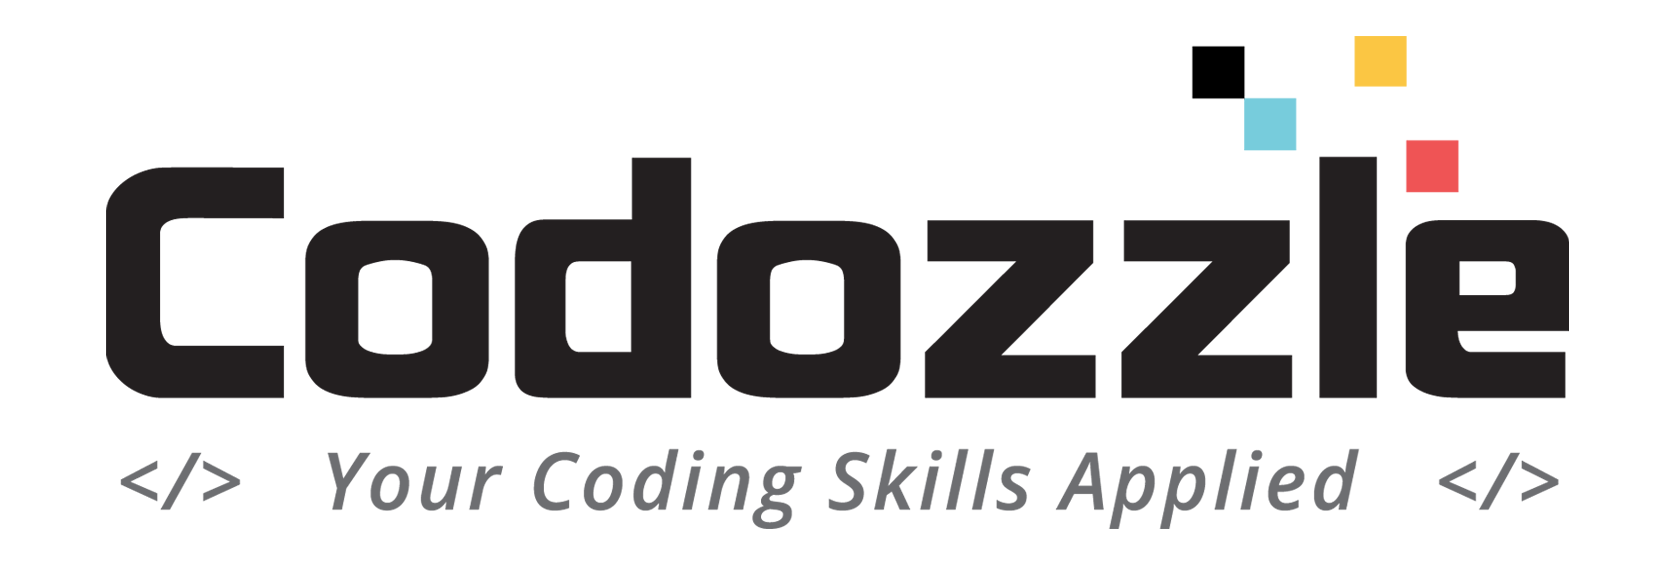 Codozzle Logo